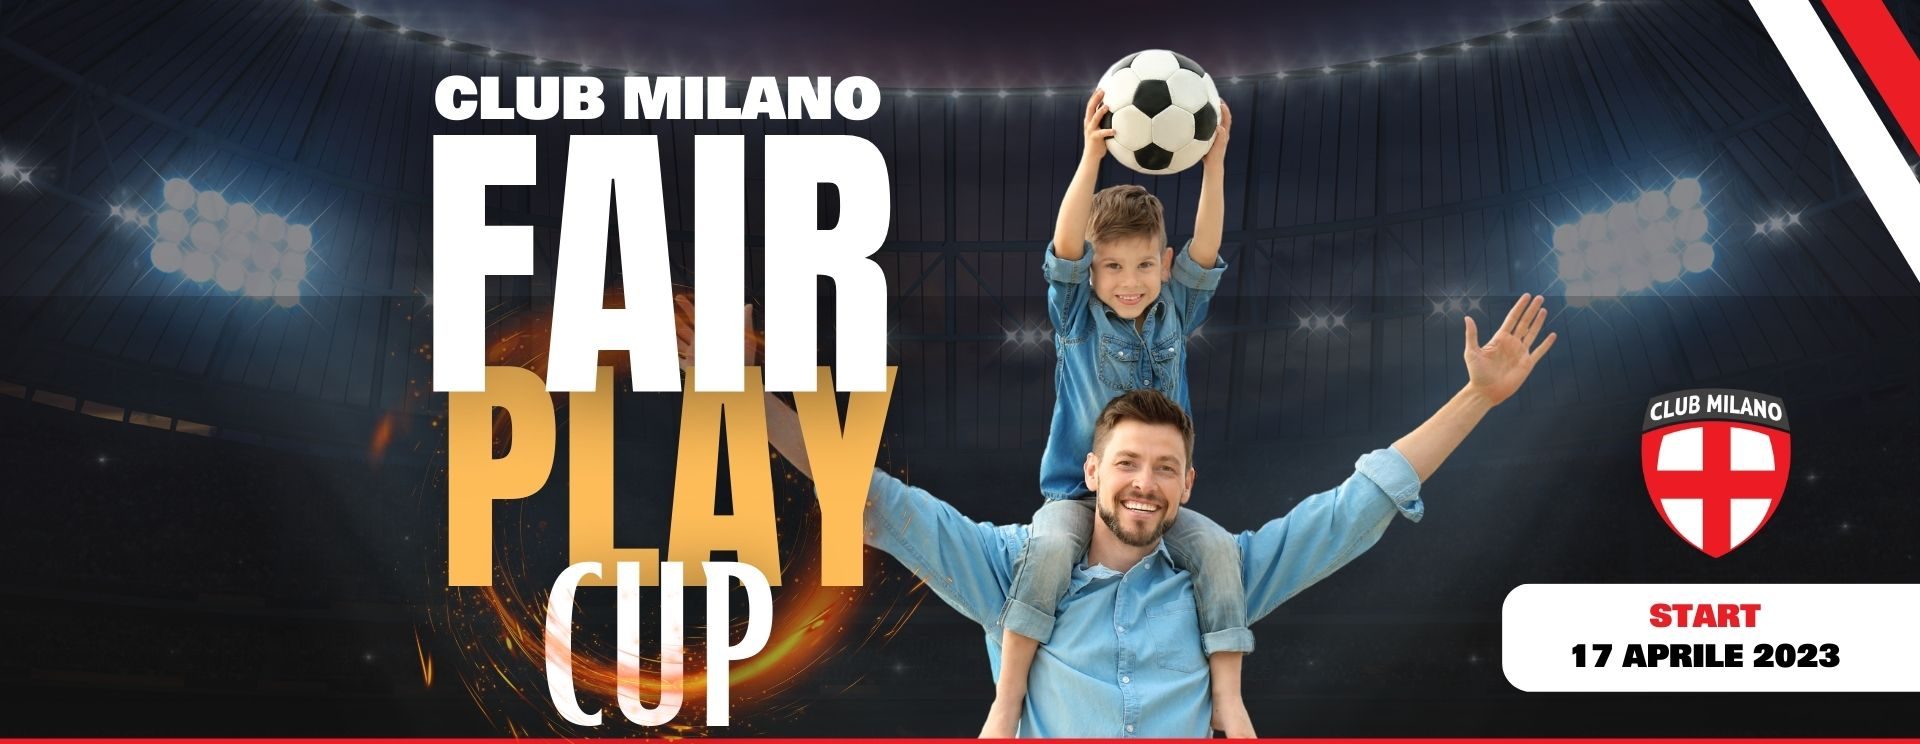 Club Milano Fair Play Cup 2023